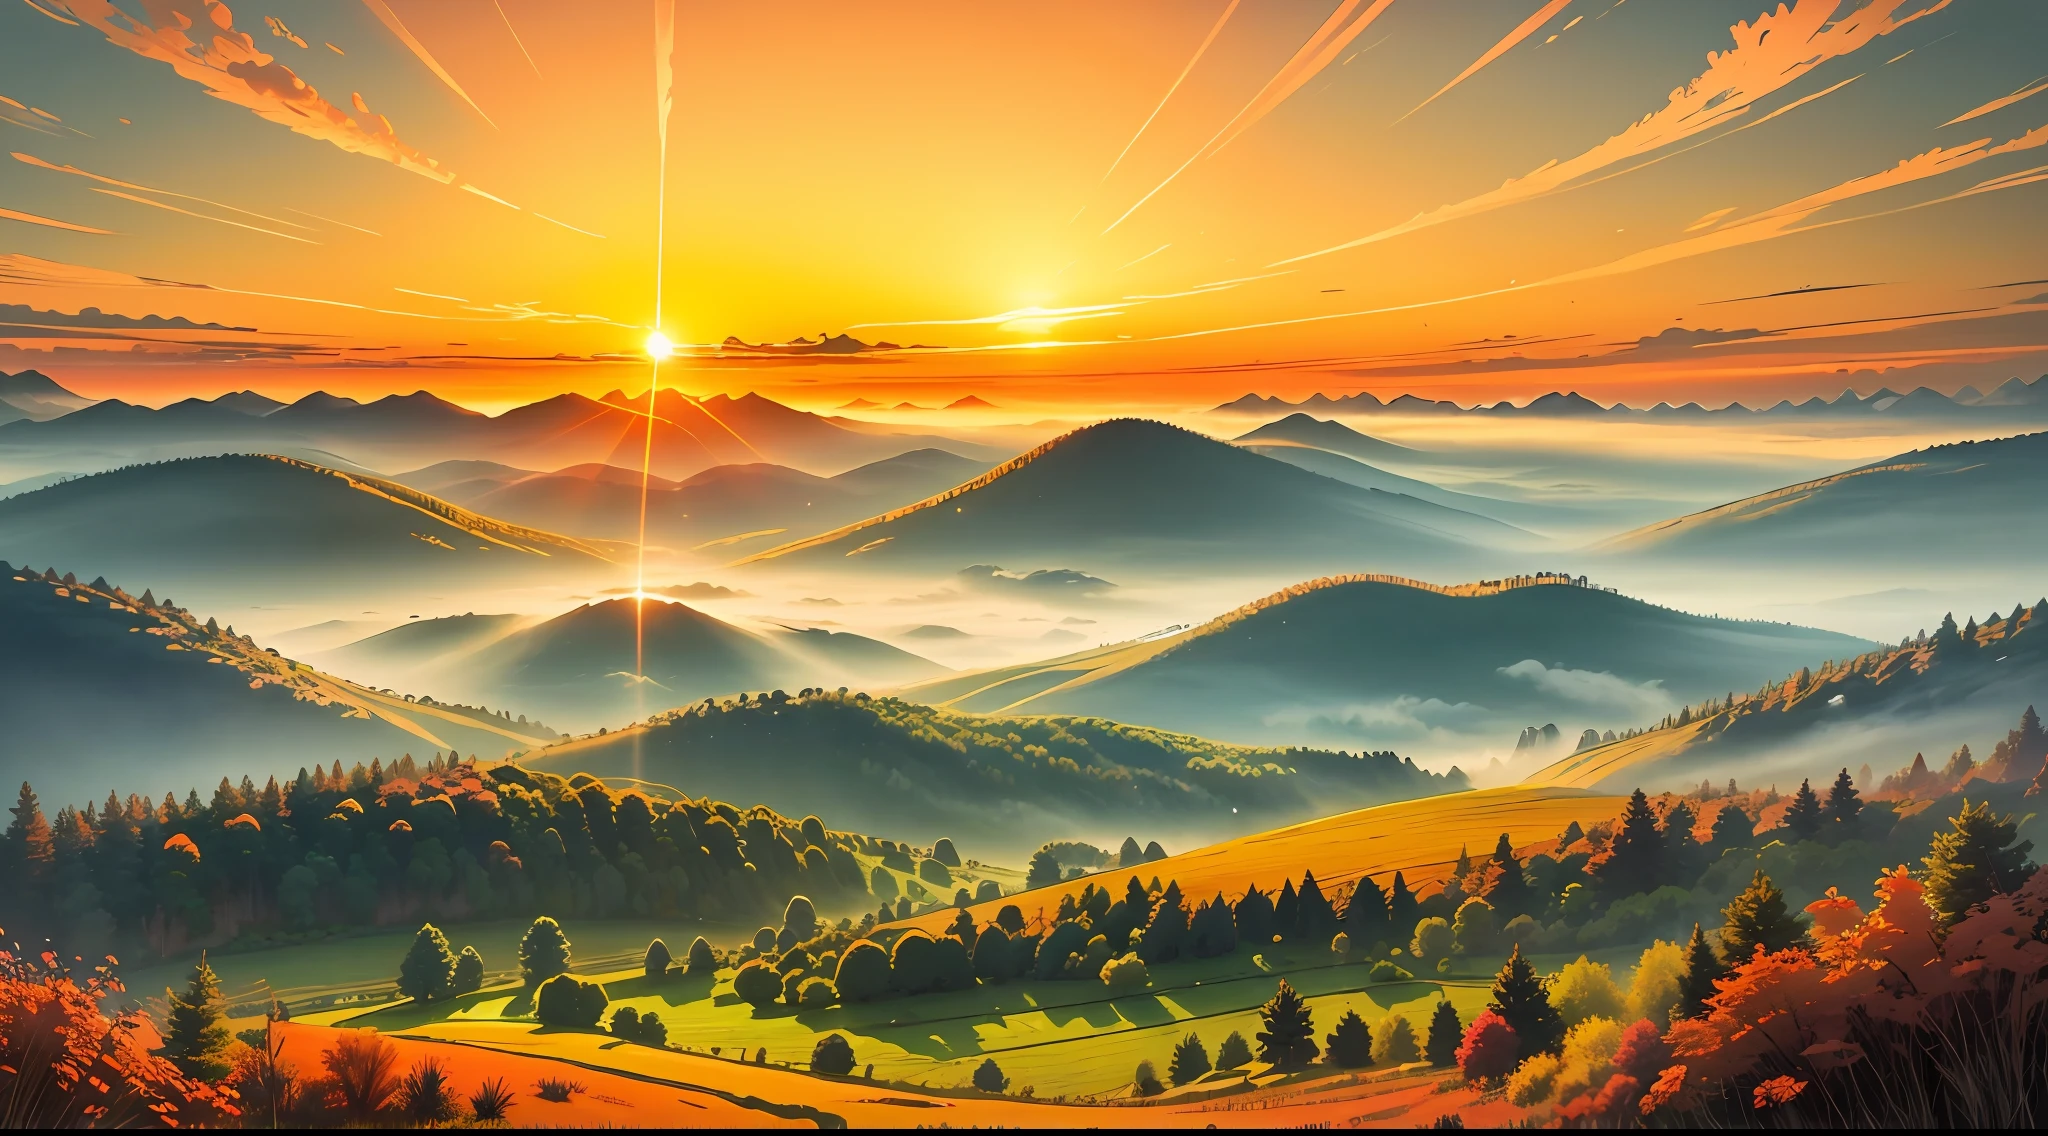 Ein Bild, das einen strahlenden Sonnenaufgang über einer ruhigen und heiteren Landschaft zeigt